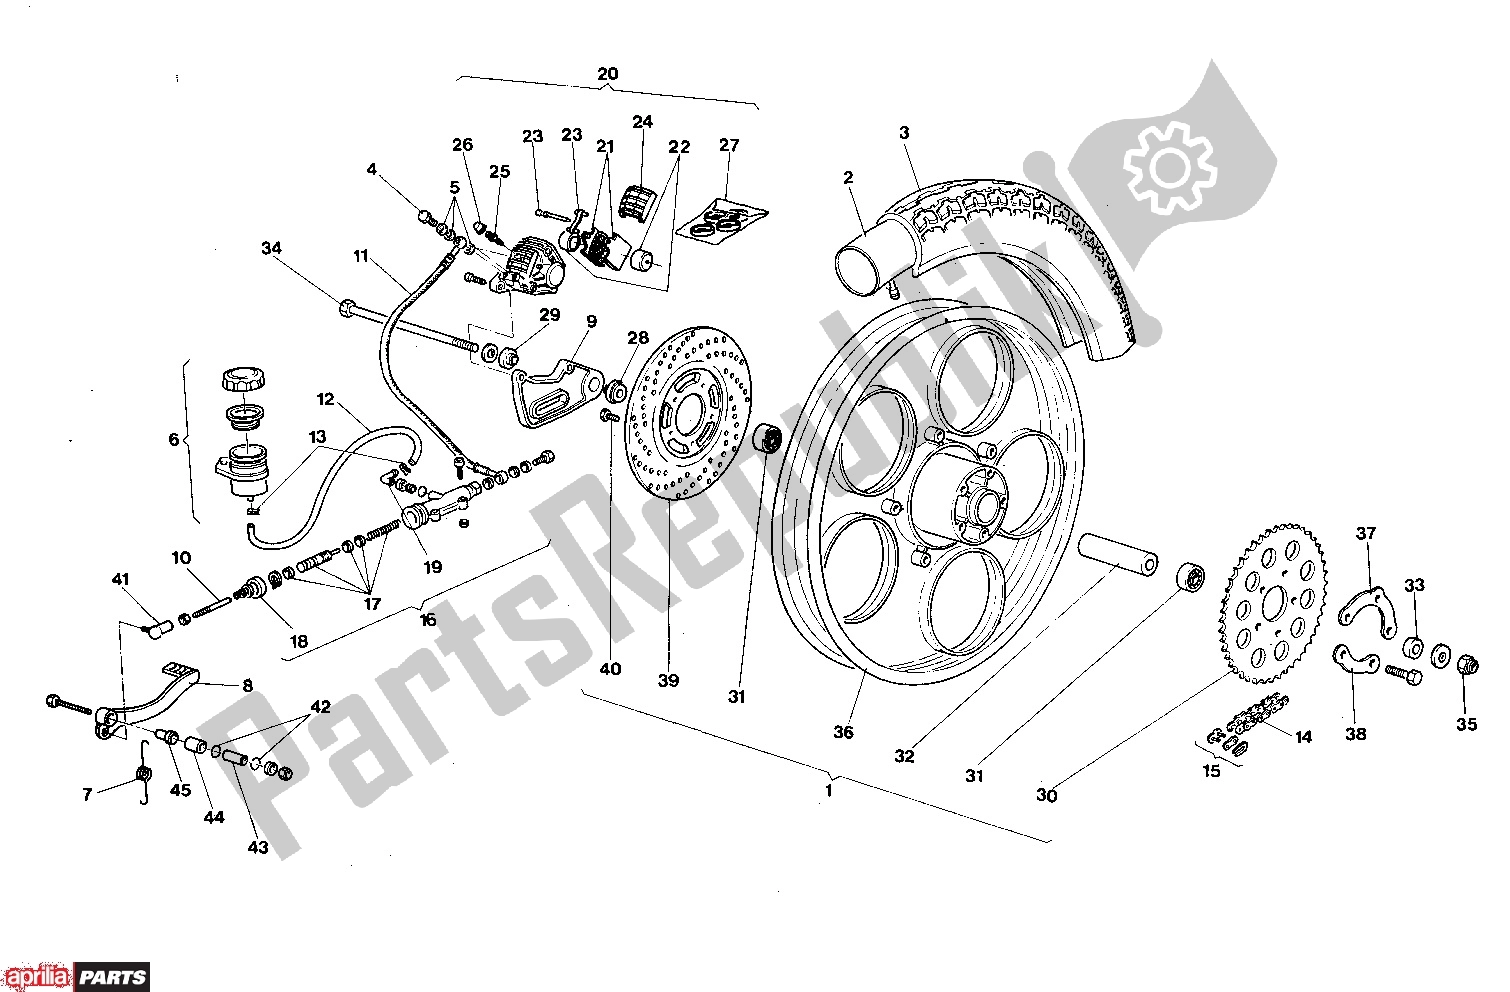 Tutte le parti per il Rear Wheel Disk Brake del Aprilia AF1 303 50 1986 - 1988